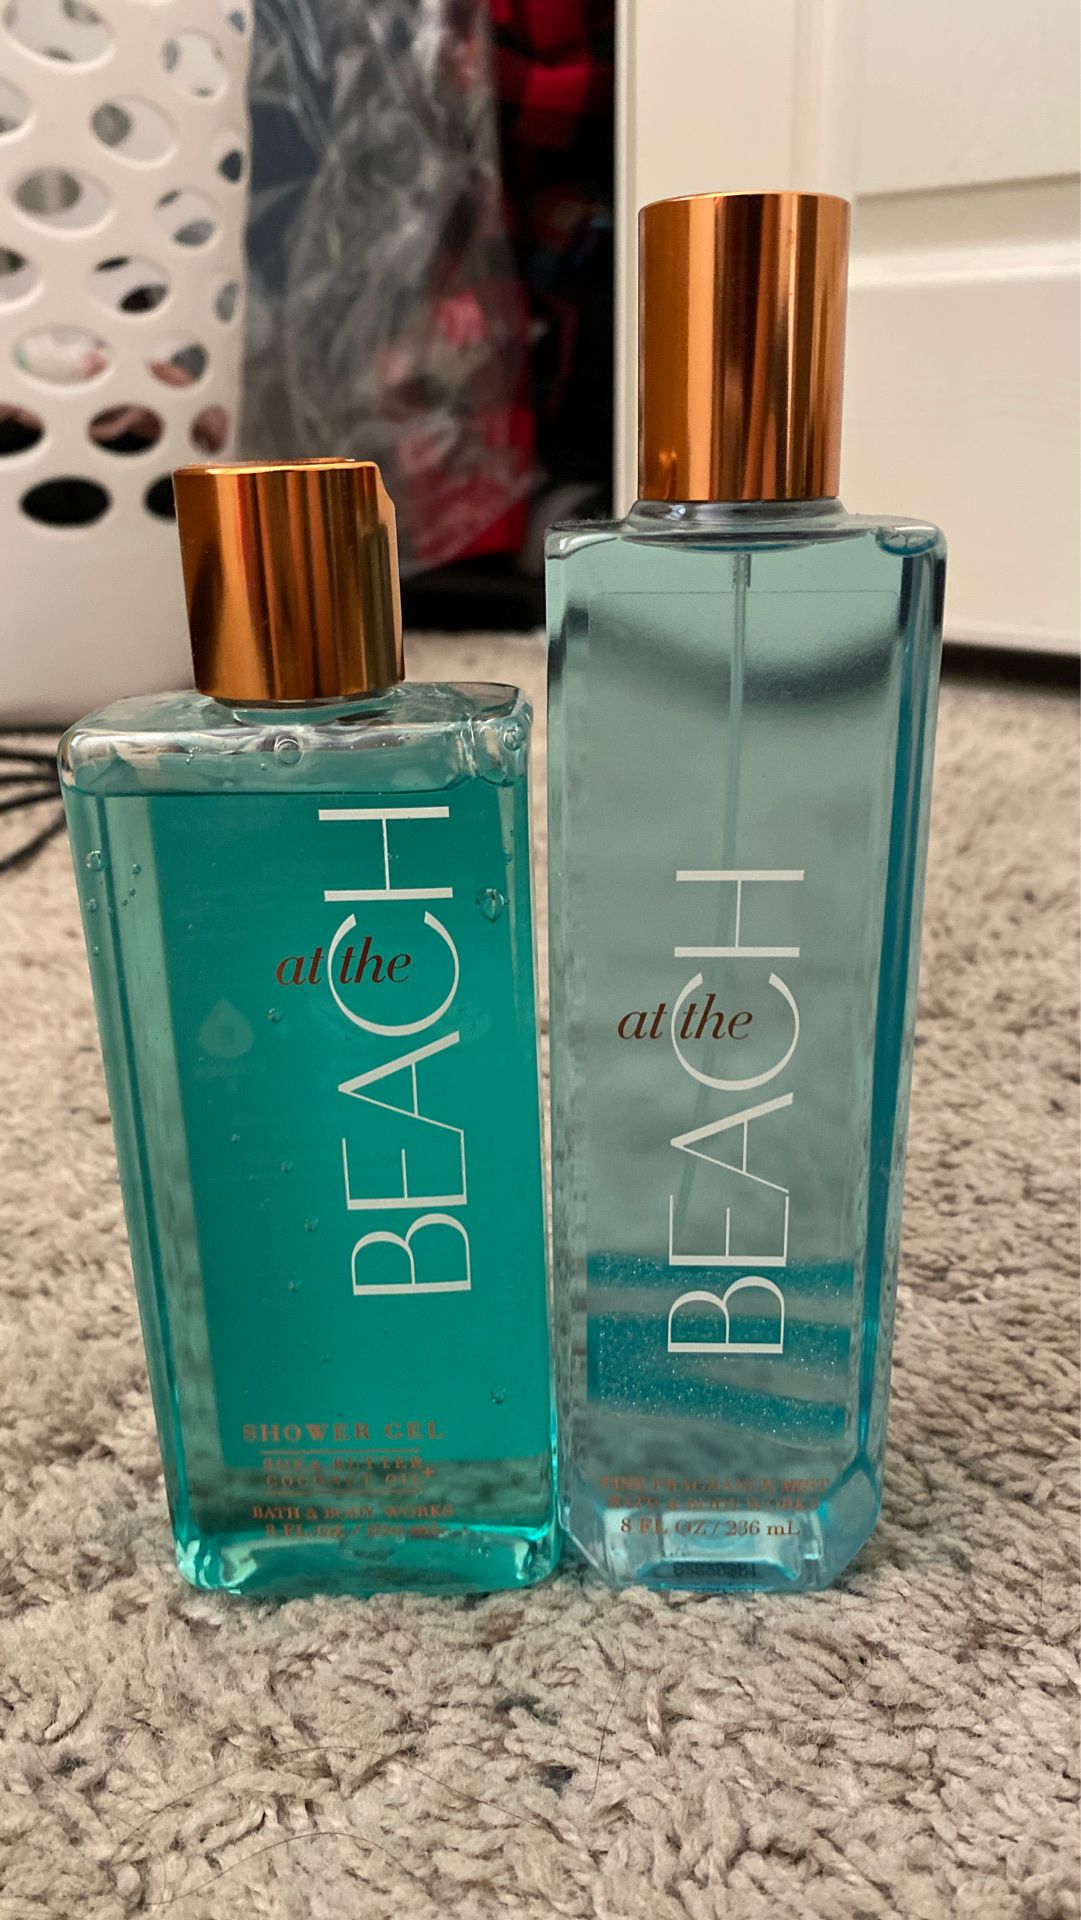 Bath & Body fragrances spray and shower gel